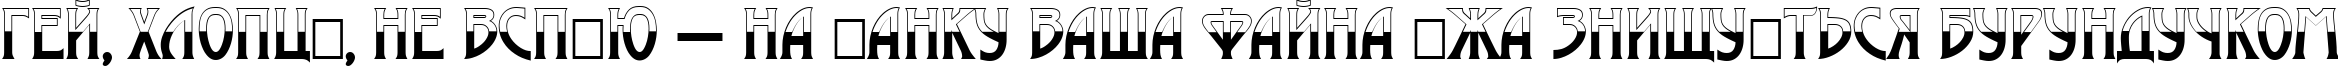 Пример написания шрифтом a_ModernoB&W текста на украинском